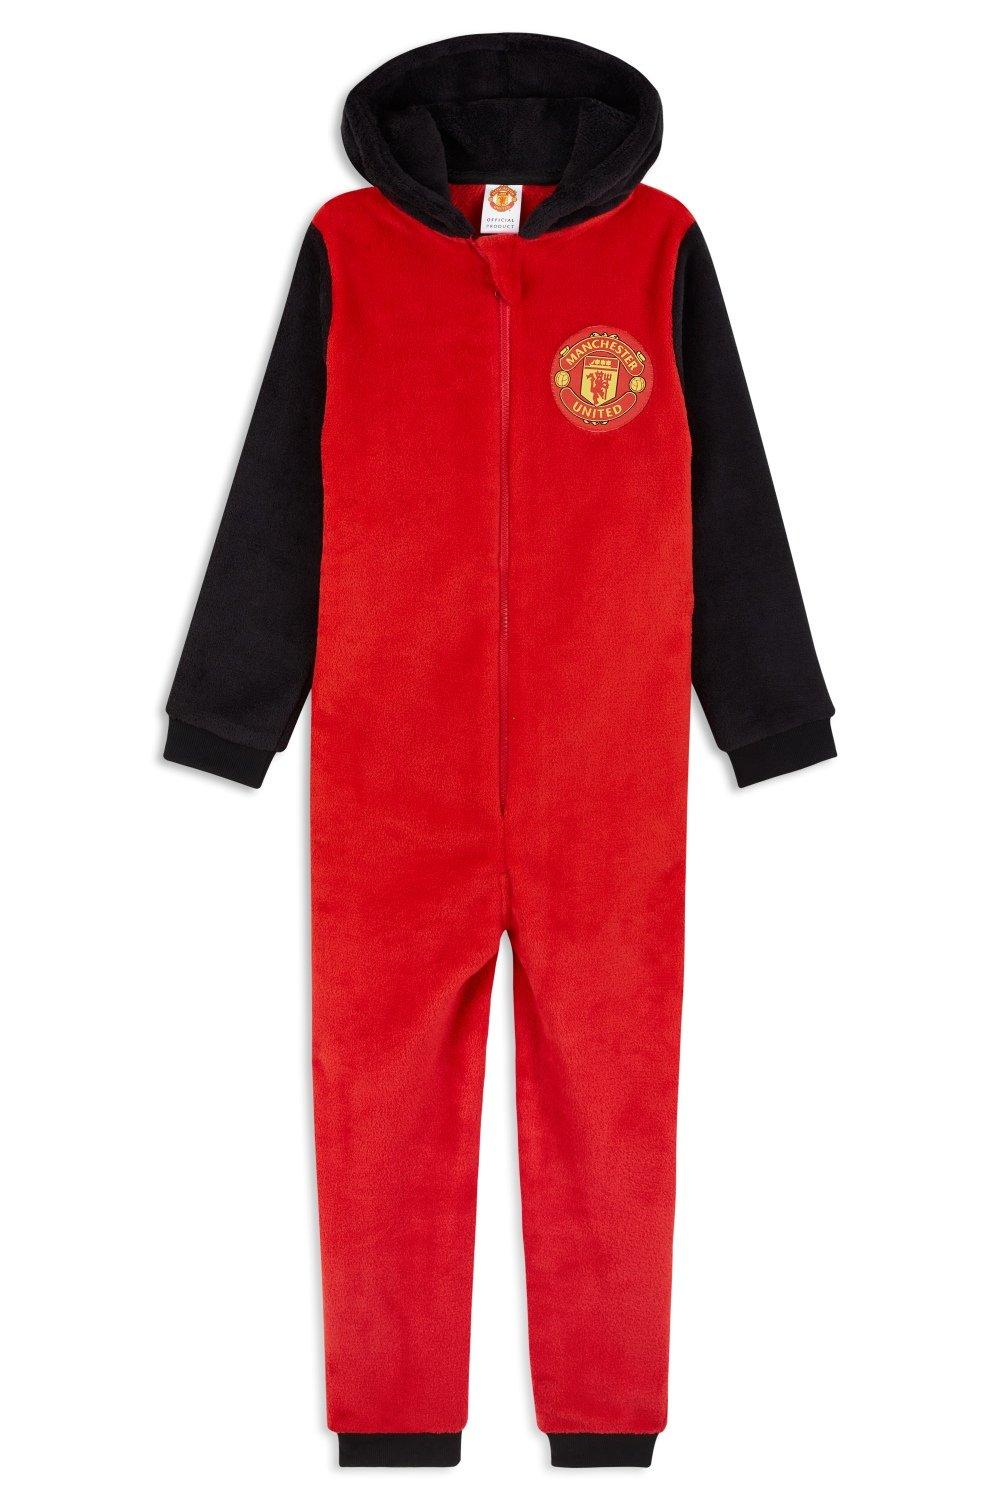 Комбинезон-пижама для дома Manchester United FC, красный комбинезоны imperial комбинезон